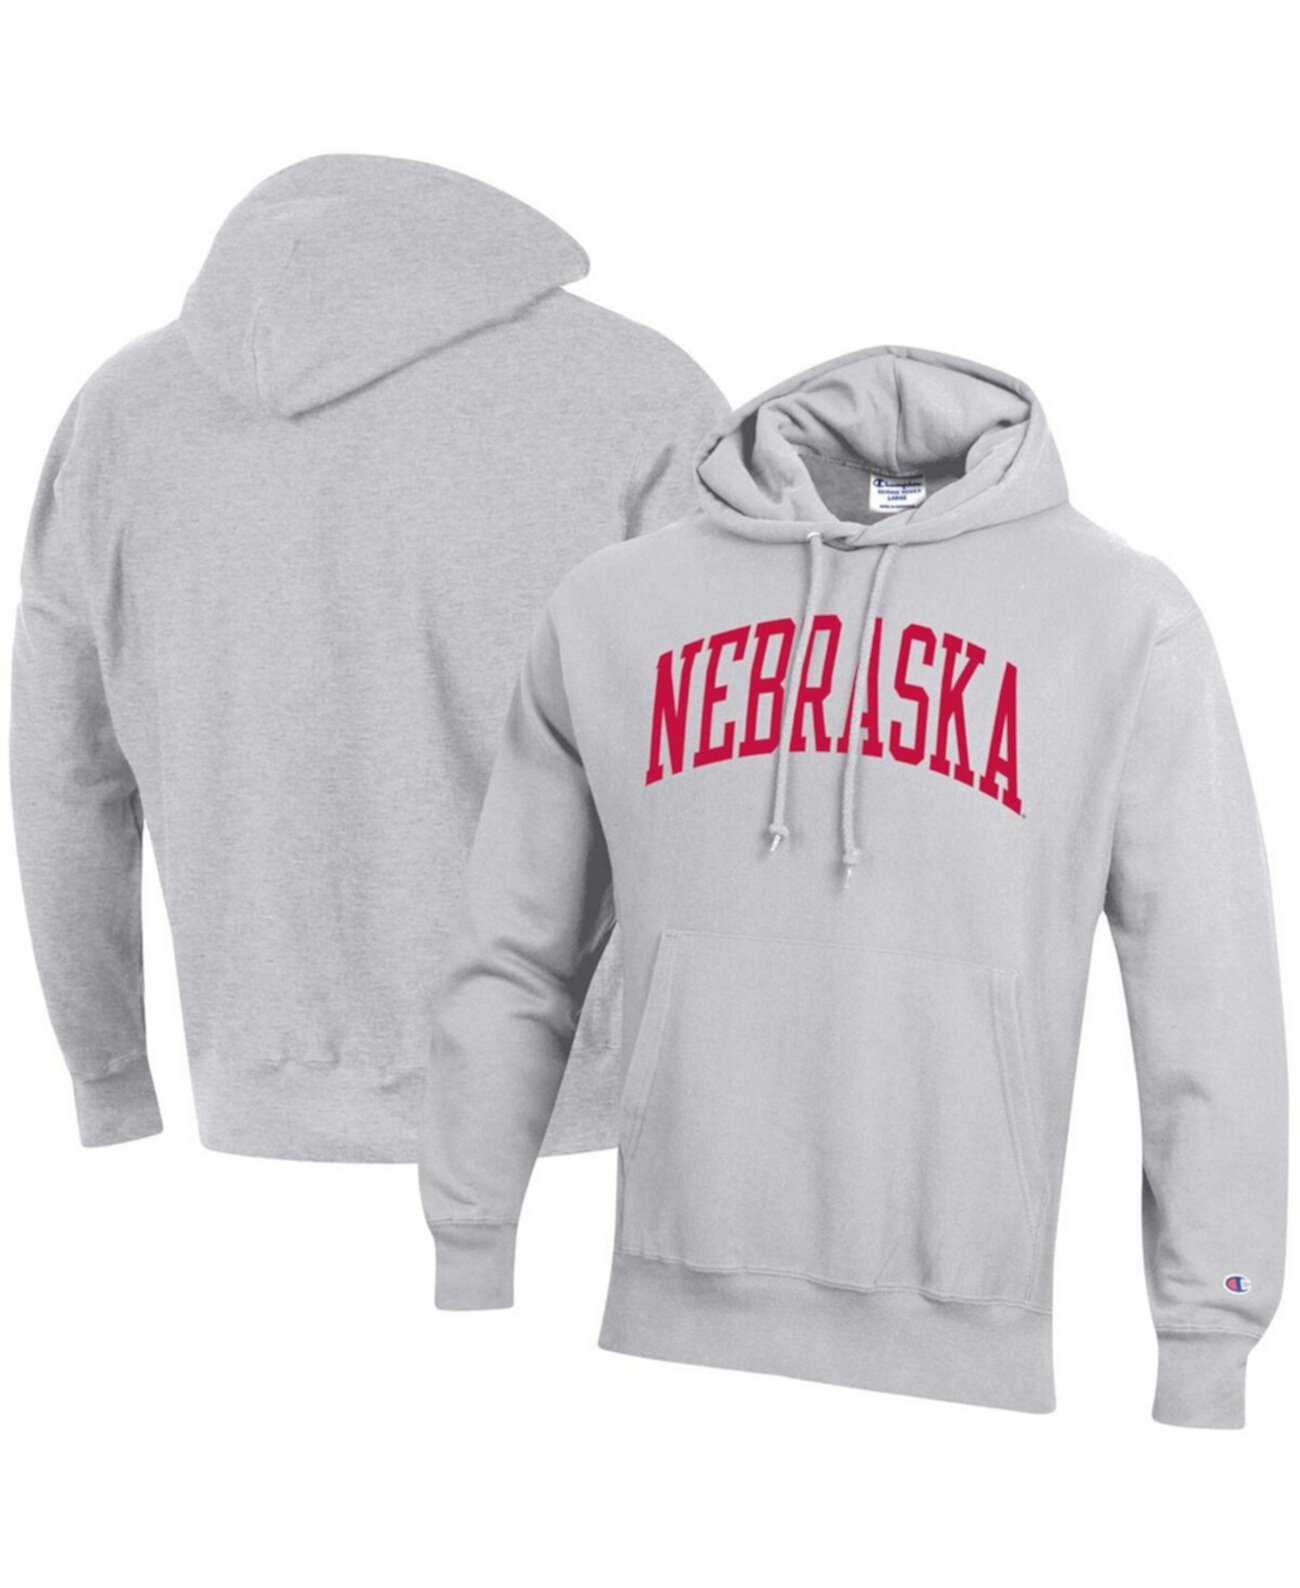 Мужской серый флисовый пуловер с капюшоном Nebraska Huskers с обратным плетением и толстовкой с капюшоном Champion